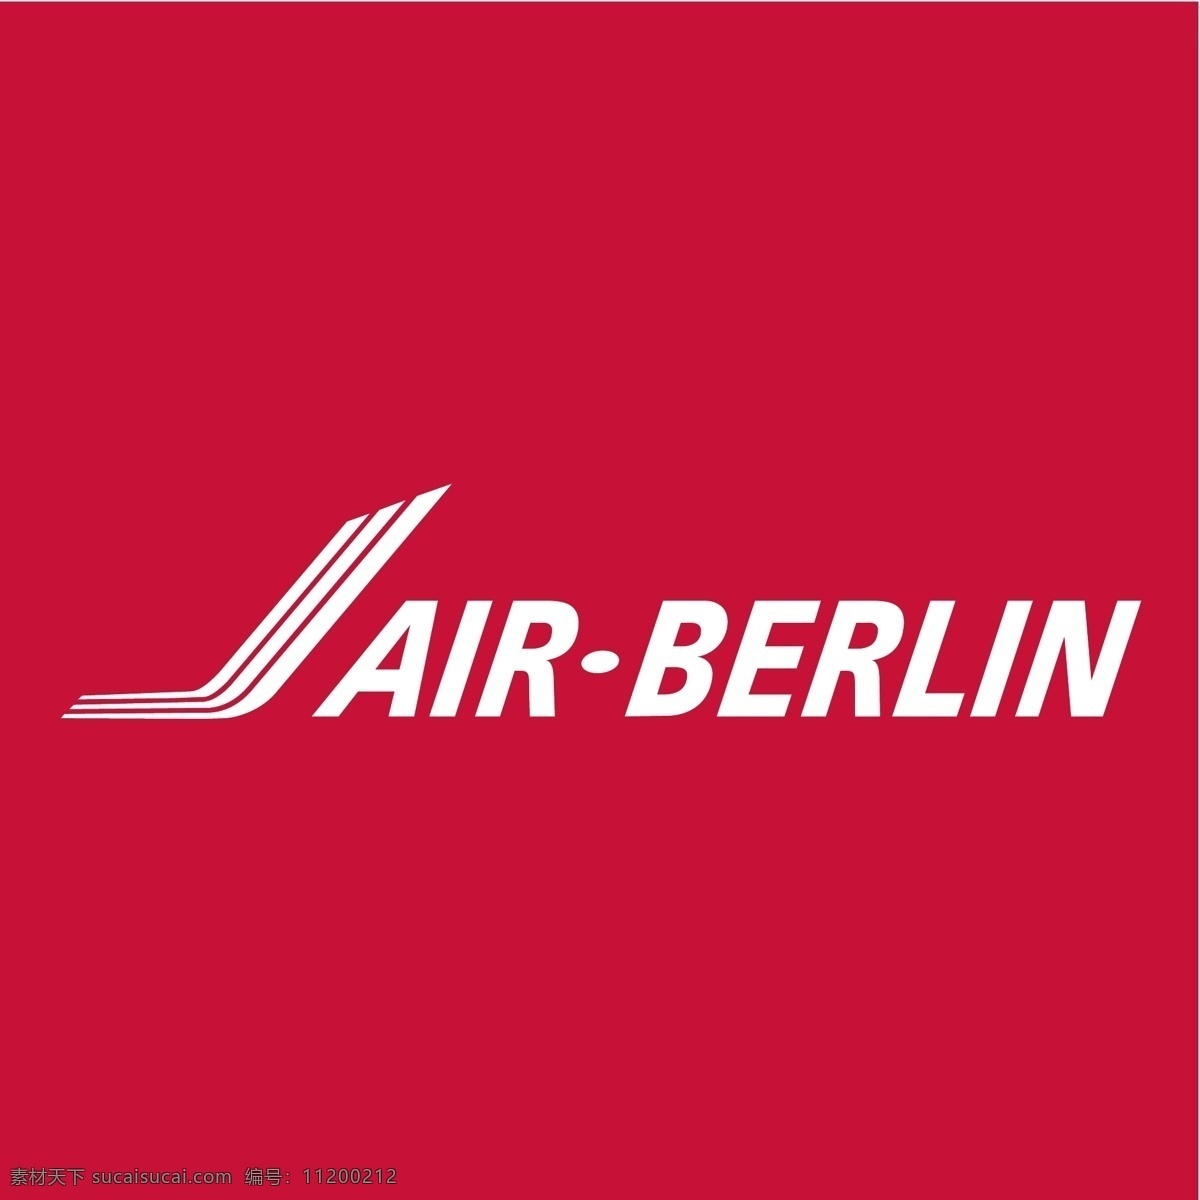 logo 标识 标识标志图标 标志 企业logo 企业 柏林 航空 航空公司 airberlin 航空标识 矢量 矢量图